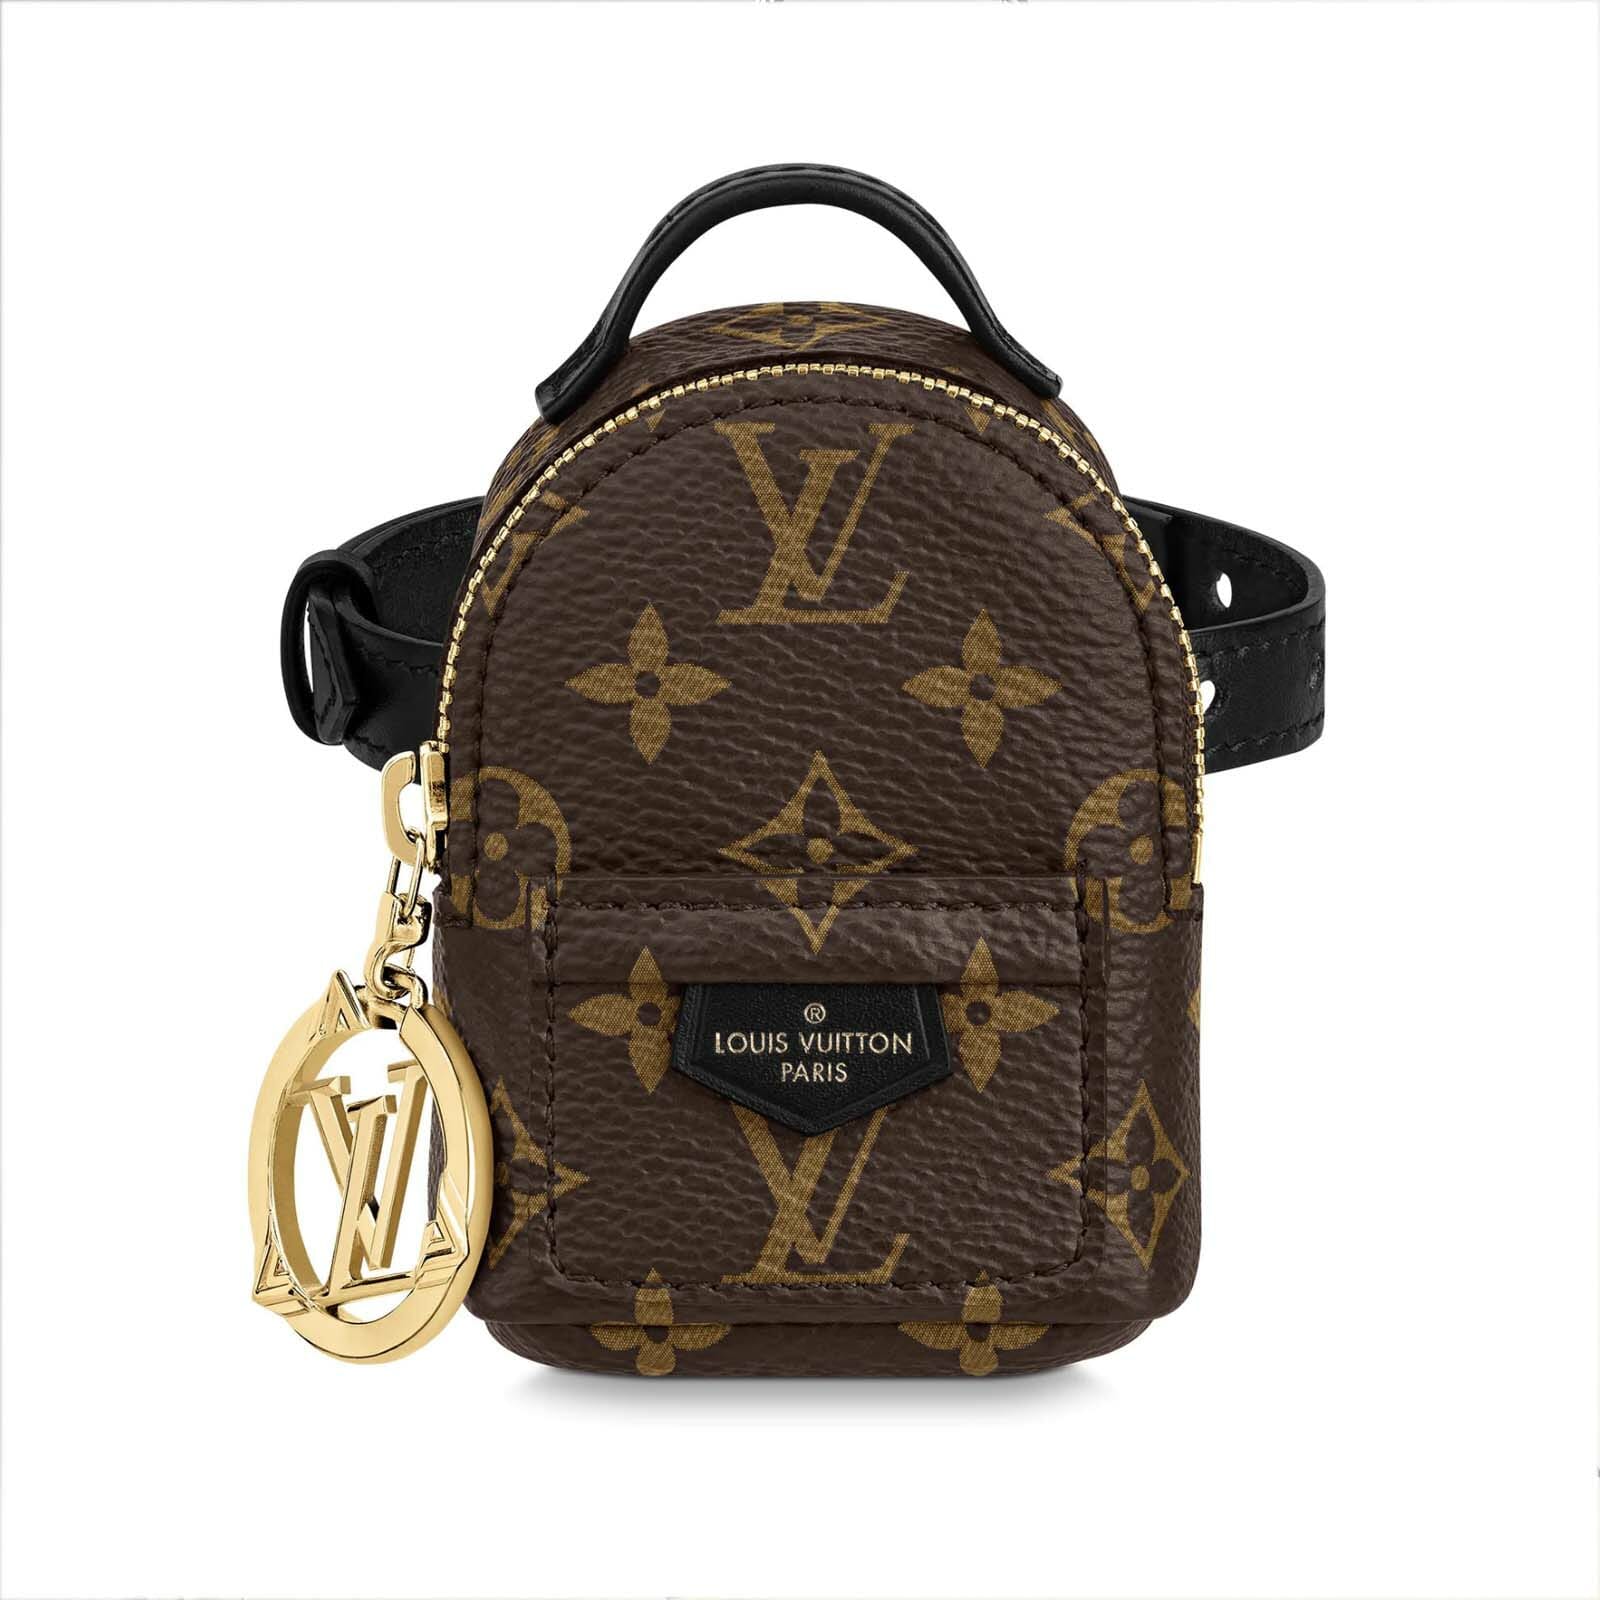 Louis Vuitton LVXLOL Palm Springs Party Bracelet Tiny Bag BRAND